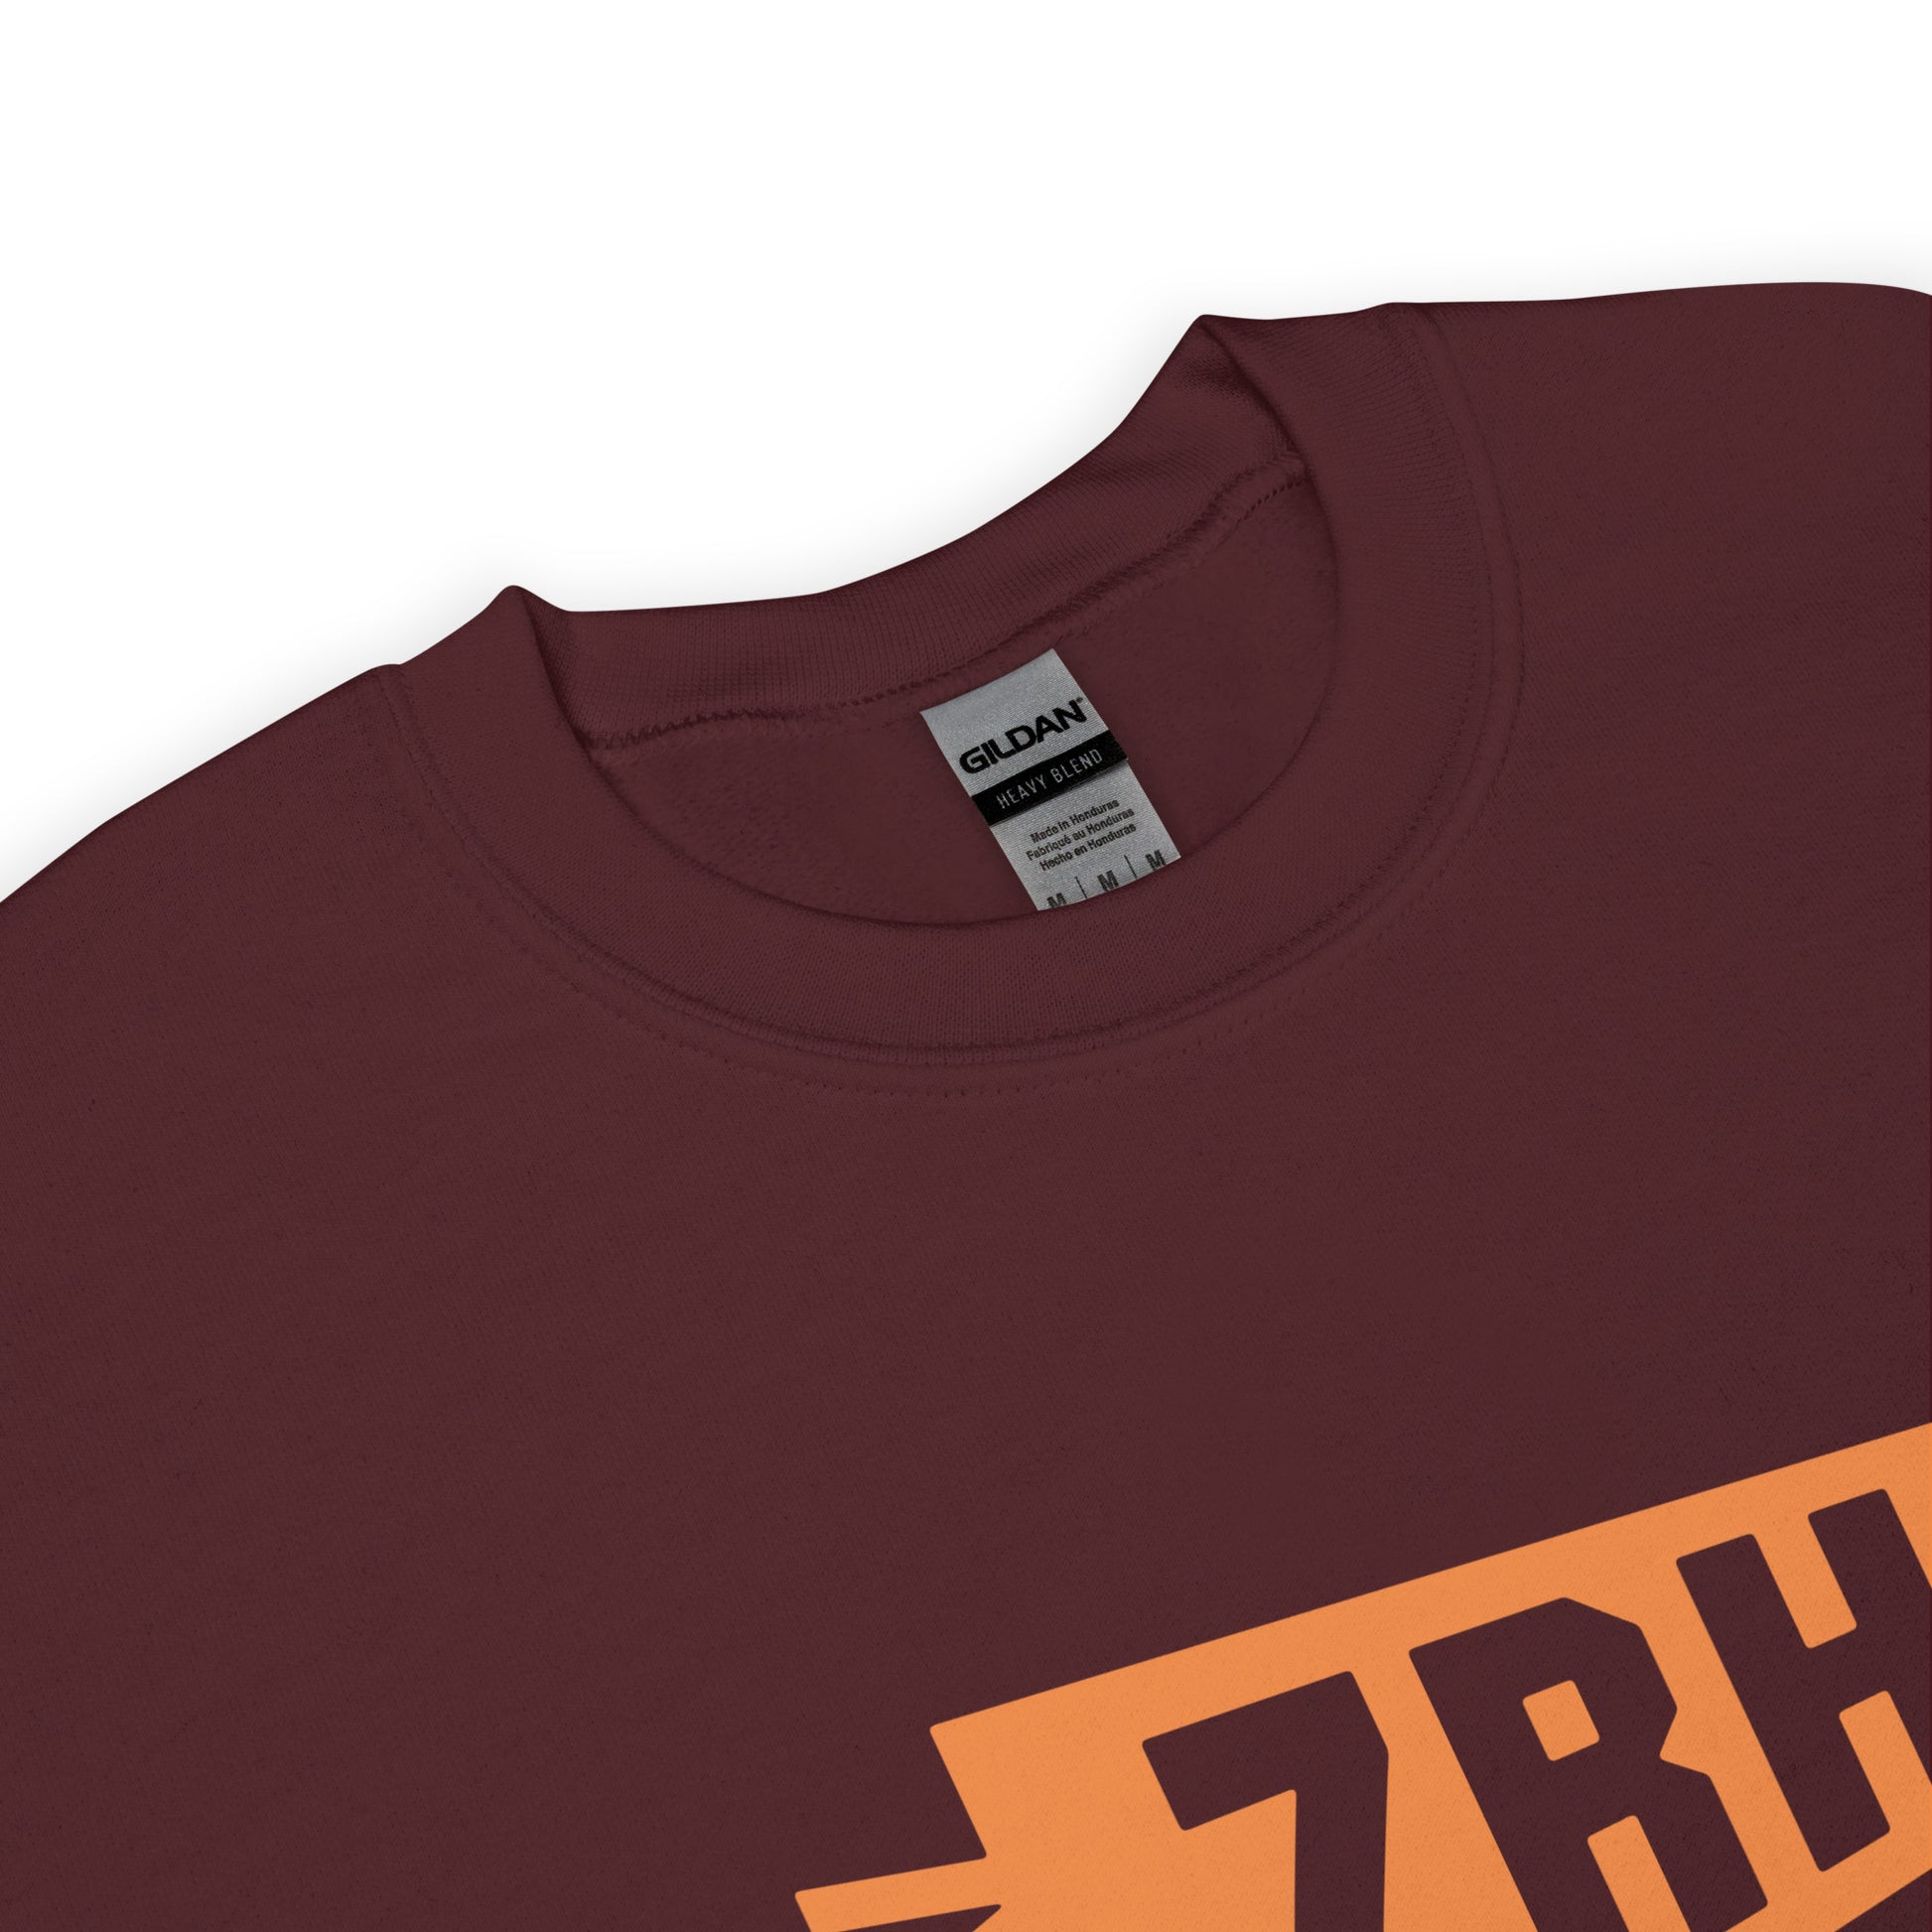 Airport Code Sweatshirt - Orange Graphic • ZRH Zurich • YHM Designs - Image 04